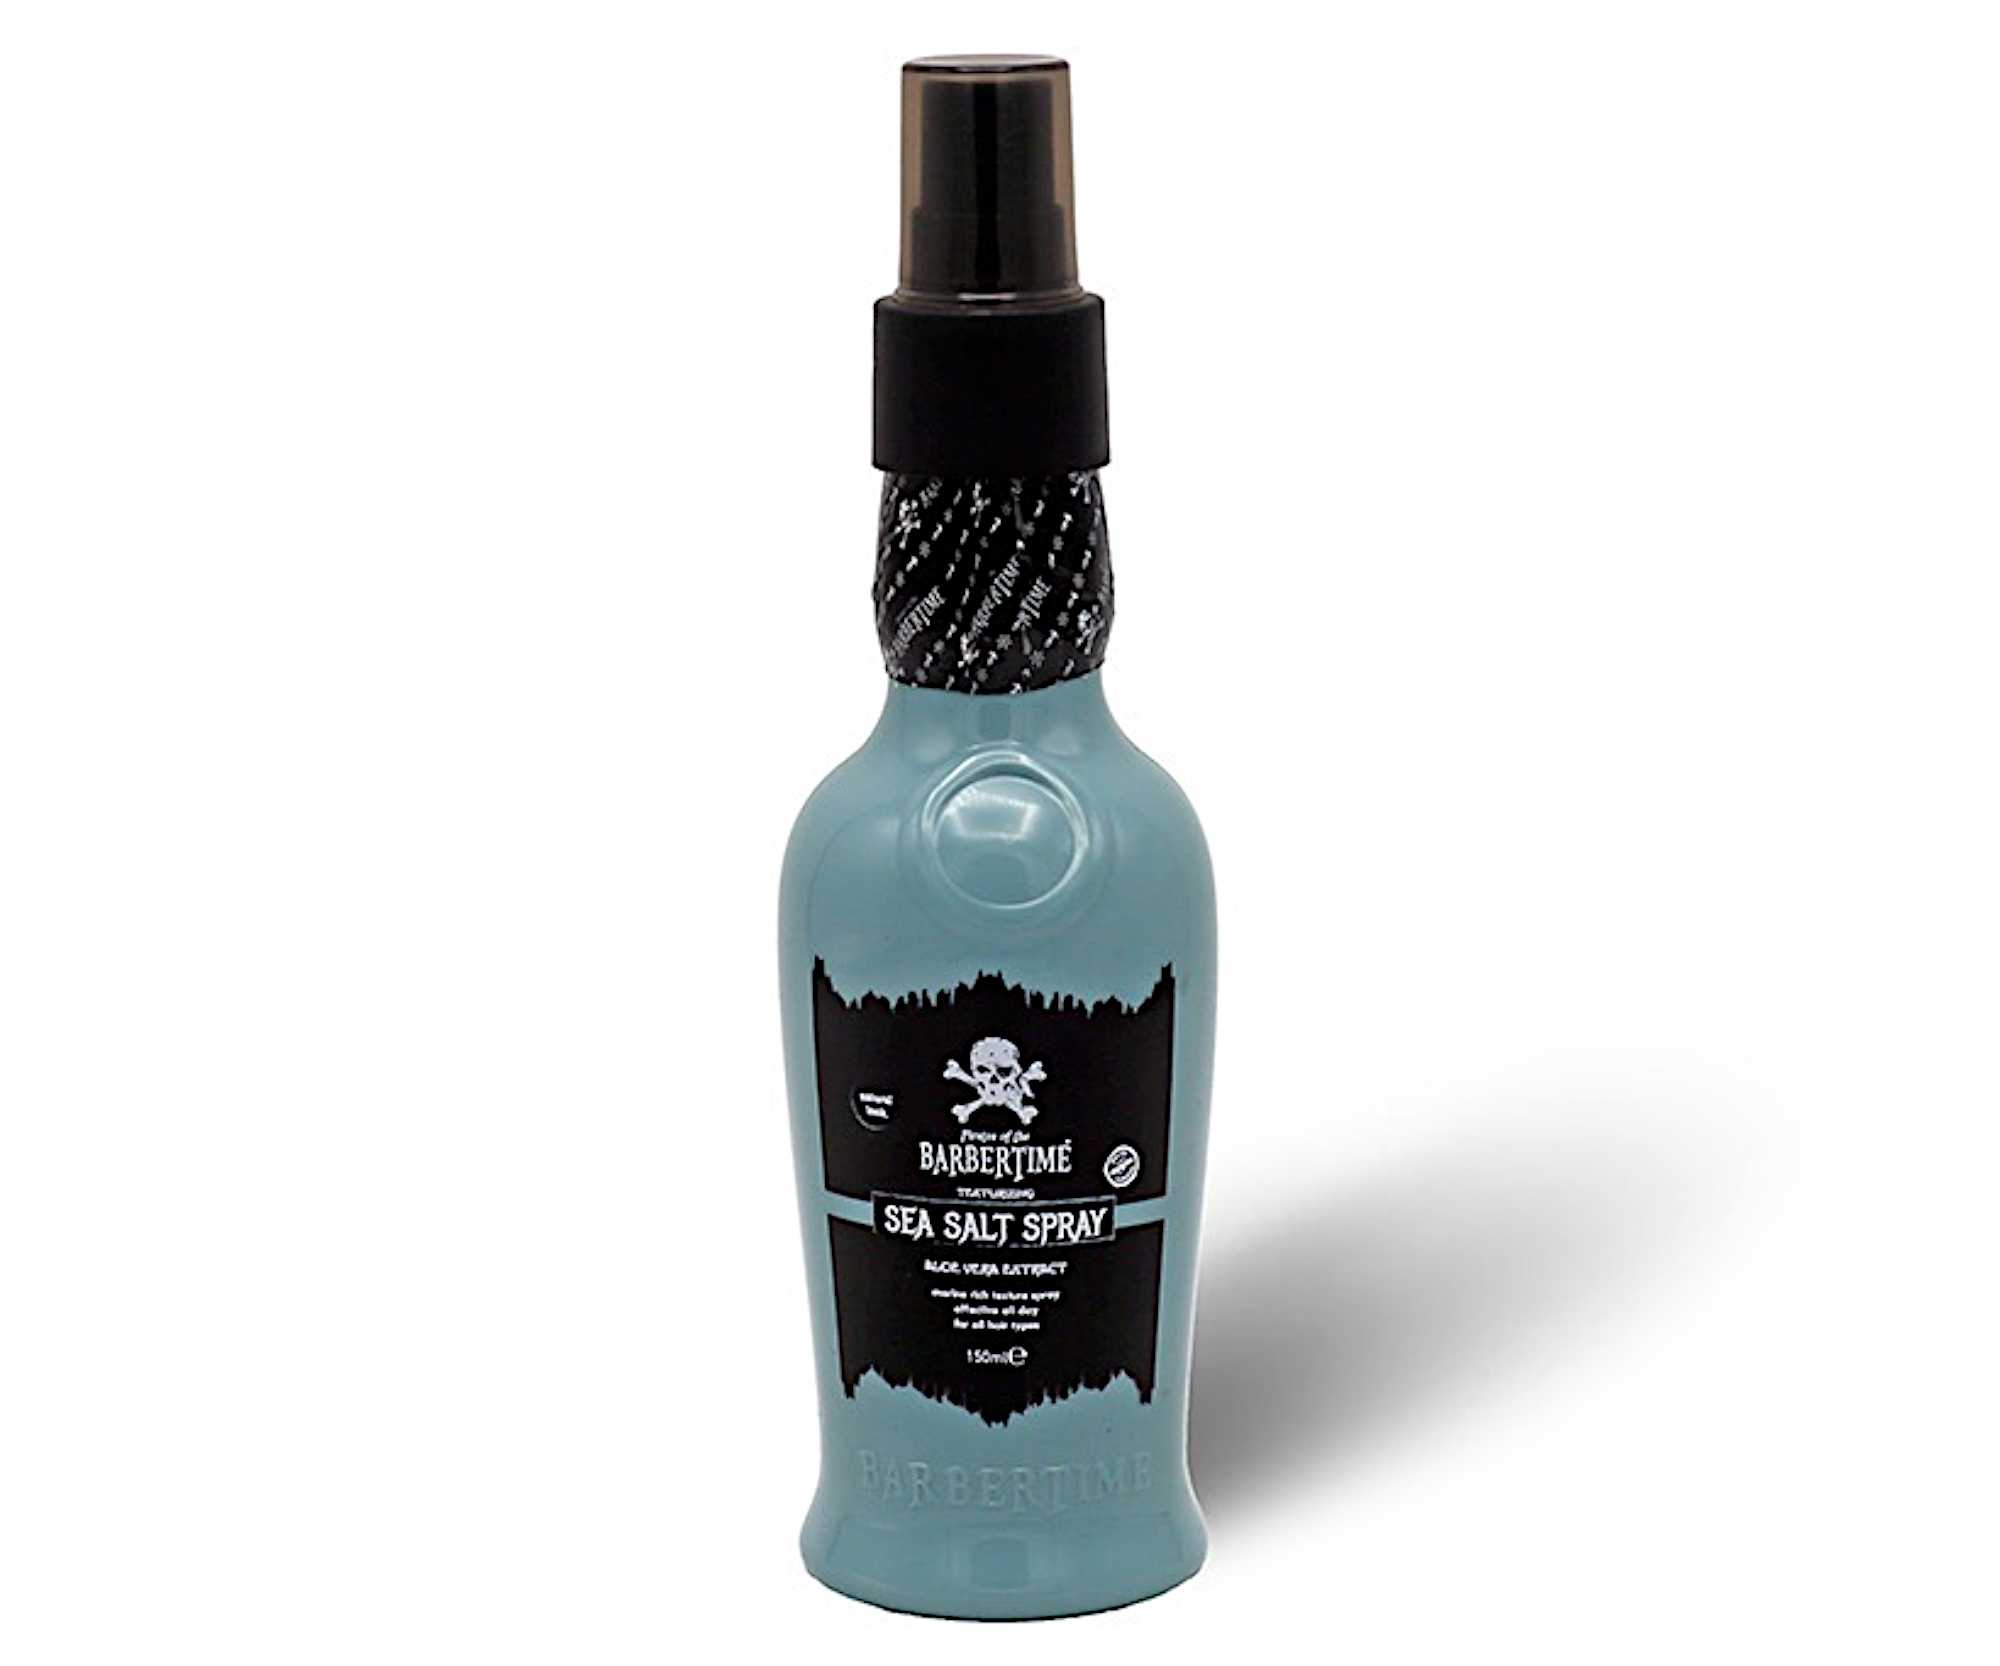 Sprej s mořskou solí pro objem a texturu vlasů Barbertime Sea Salt Spray - 150 ml - Pirates of the Barbertime + dárek zdarma